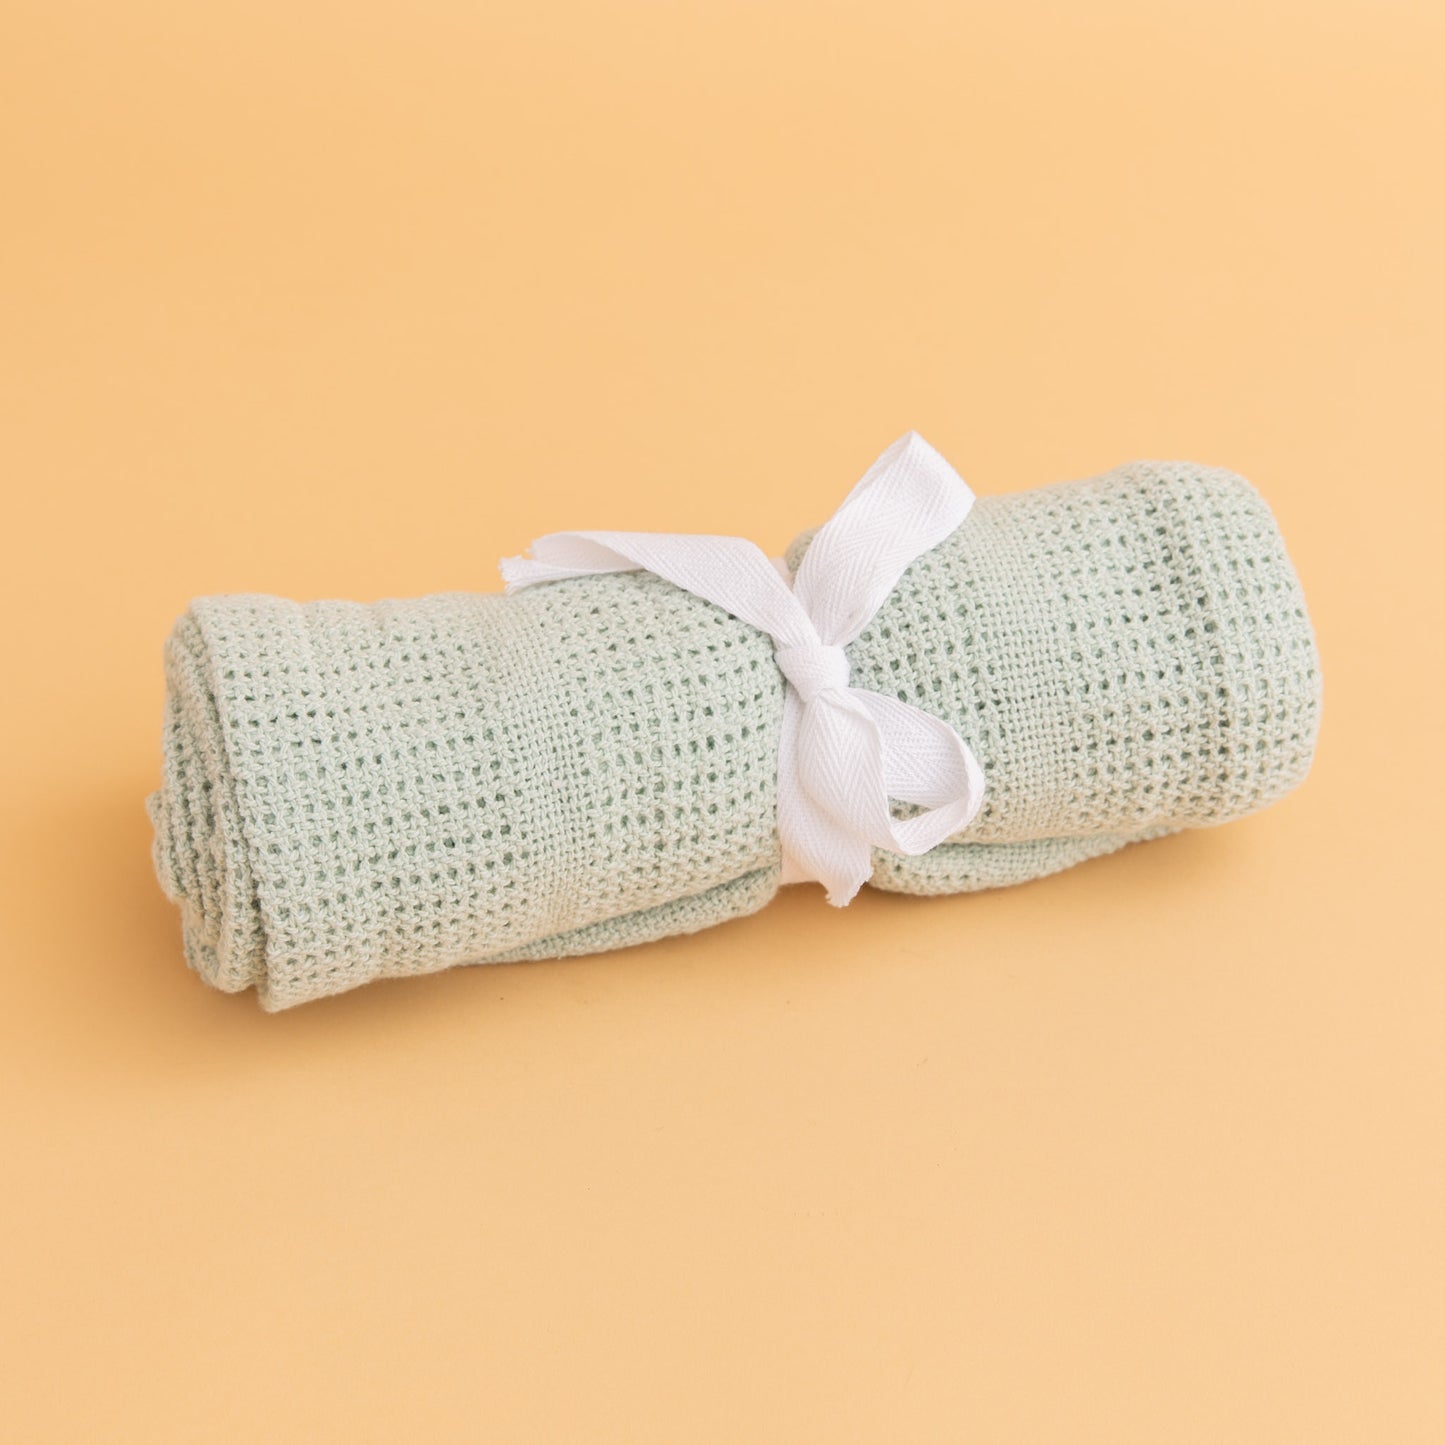 Jiggle & Giggle - Cotton Cellular Blanket